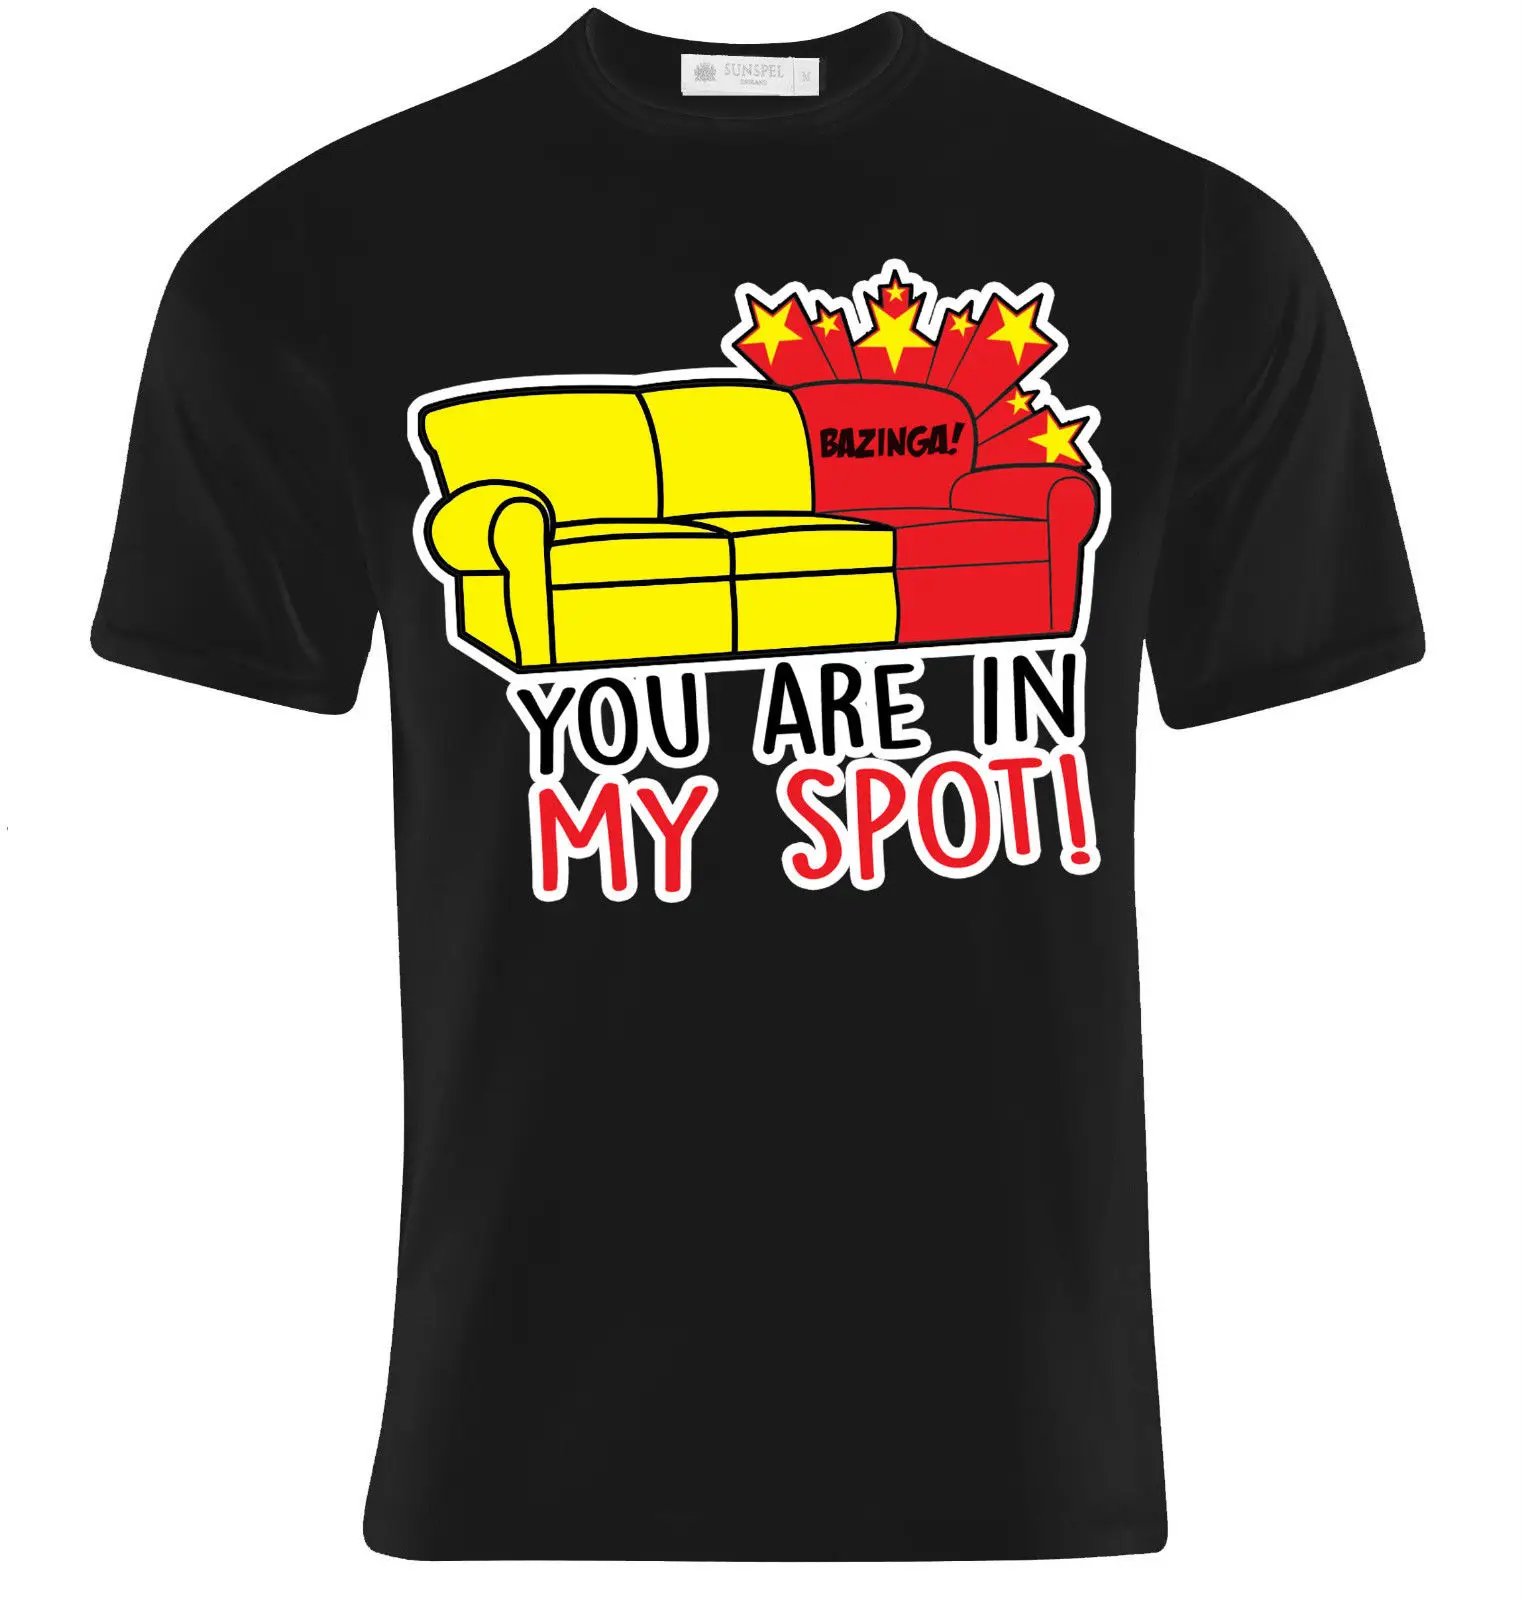 This is my Spot Sheldon bazinga big bang Funny cool T-shirt